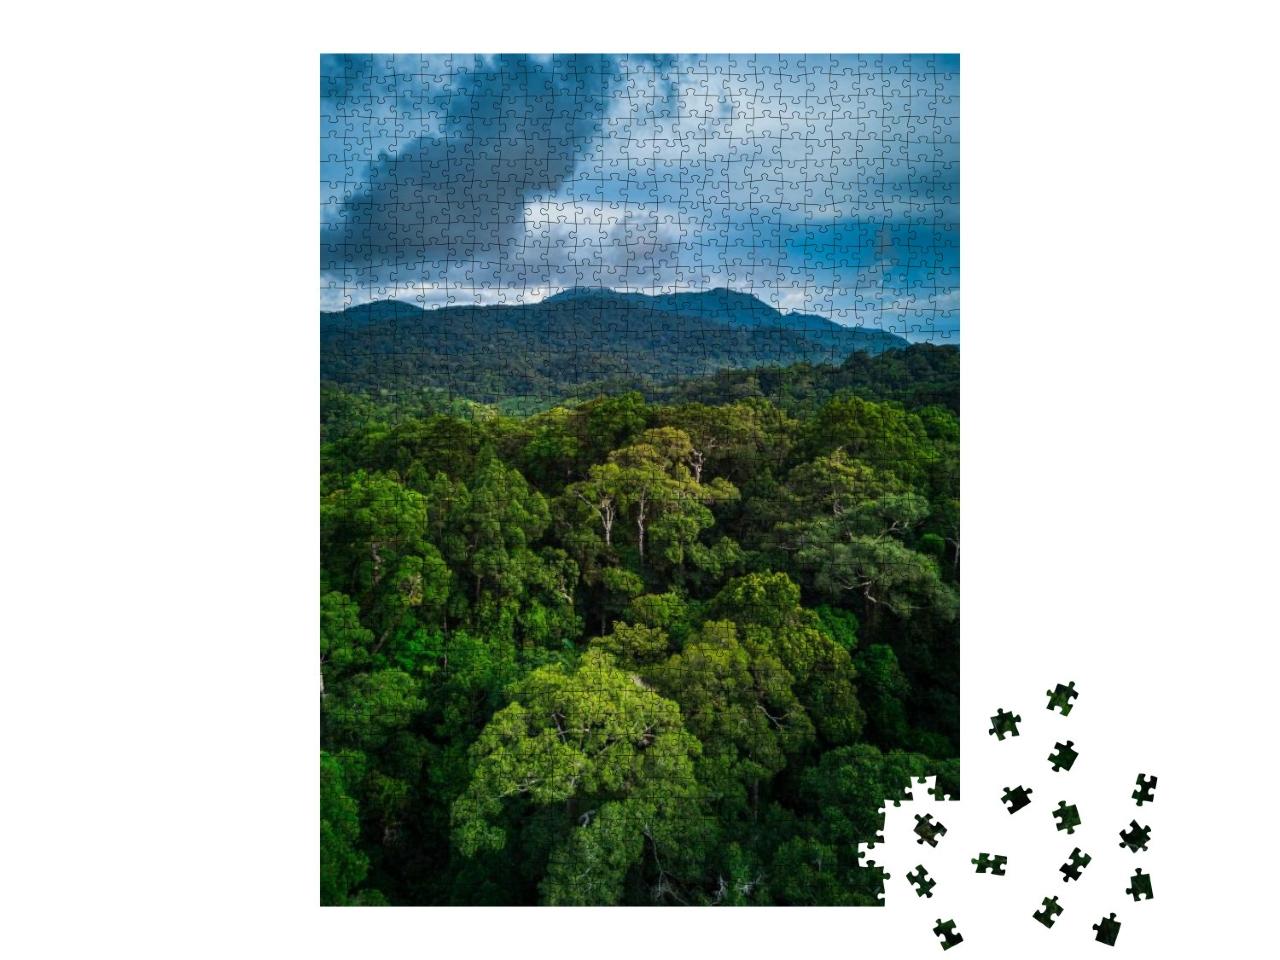 Puzzle 1000 Teile „Tropischer Regenwald mit grünen Hügeln“